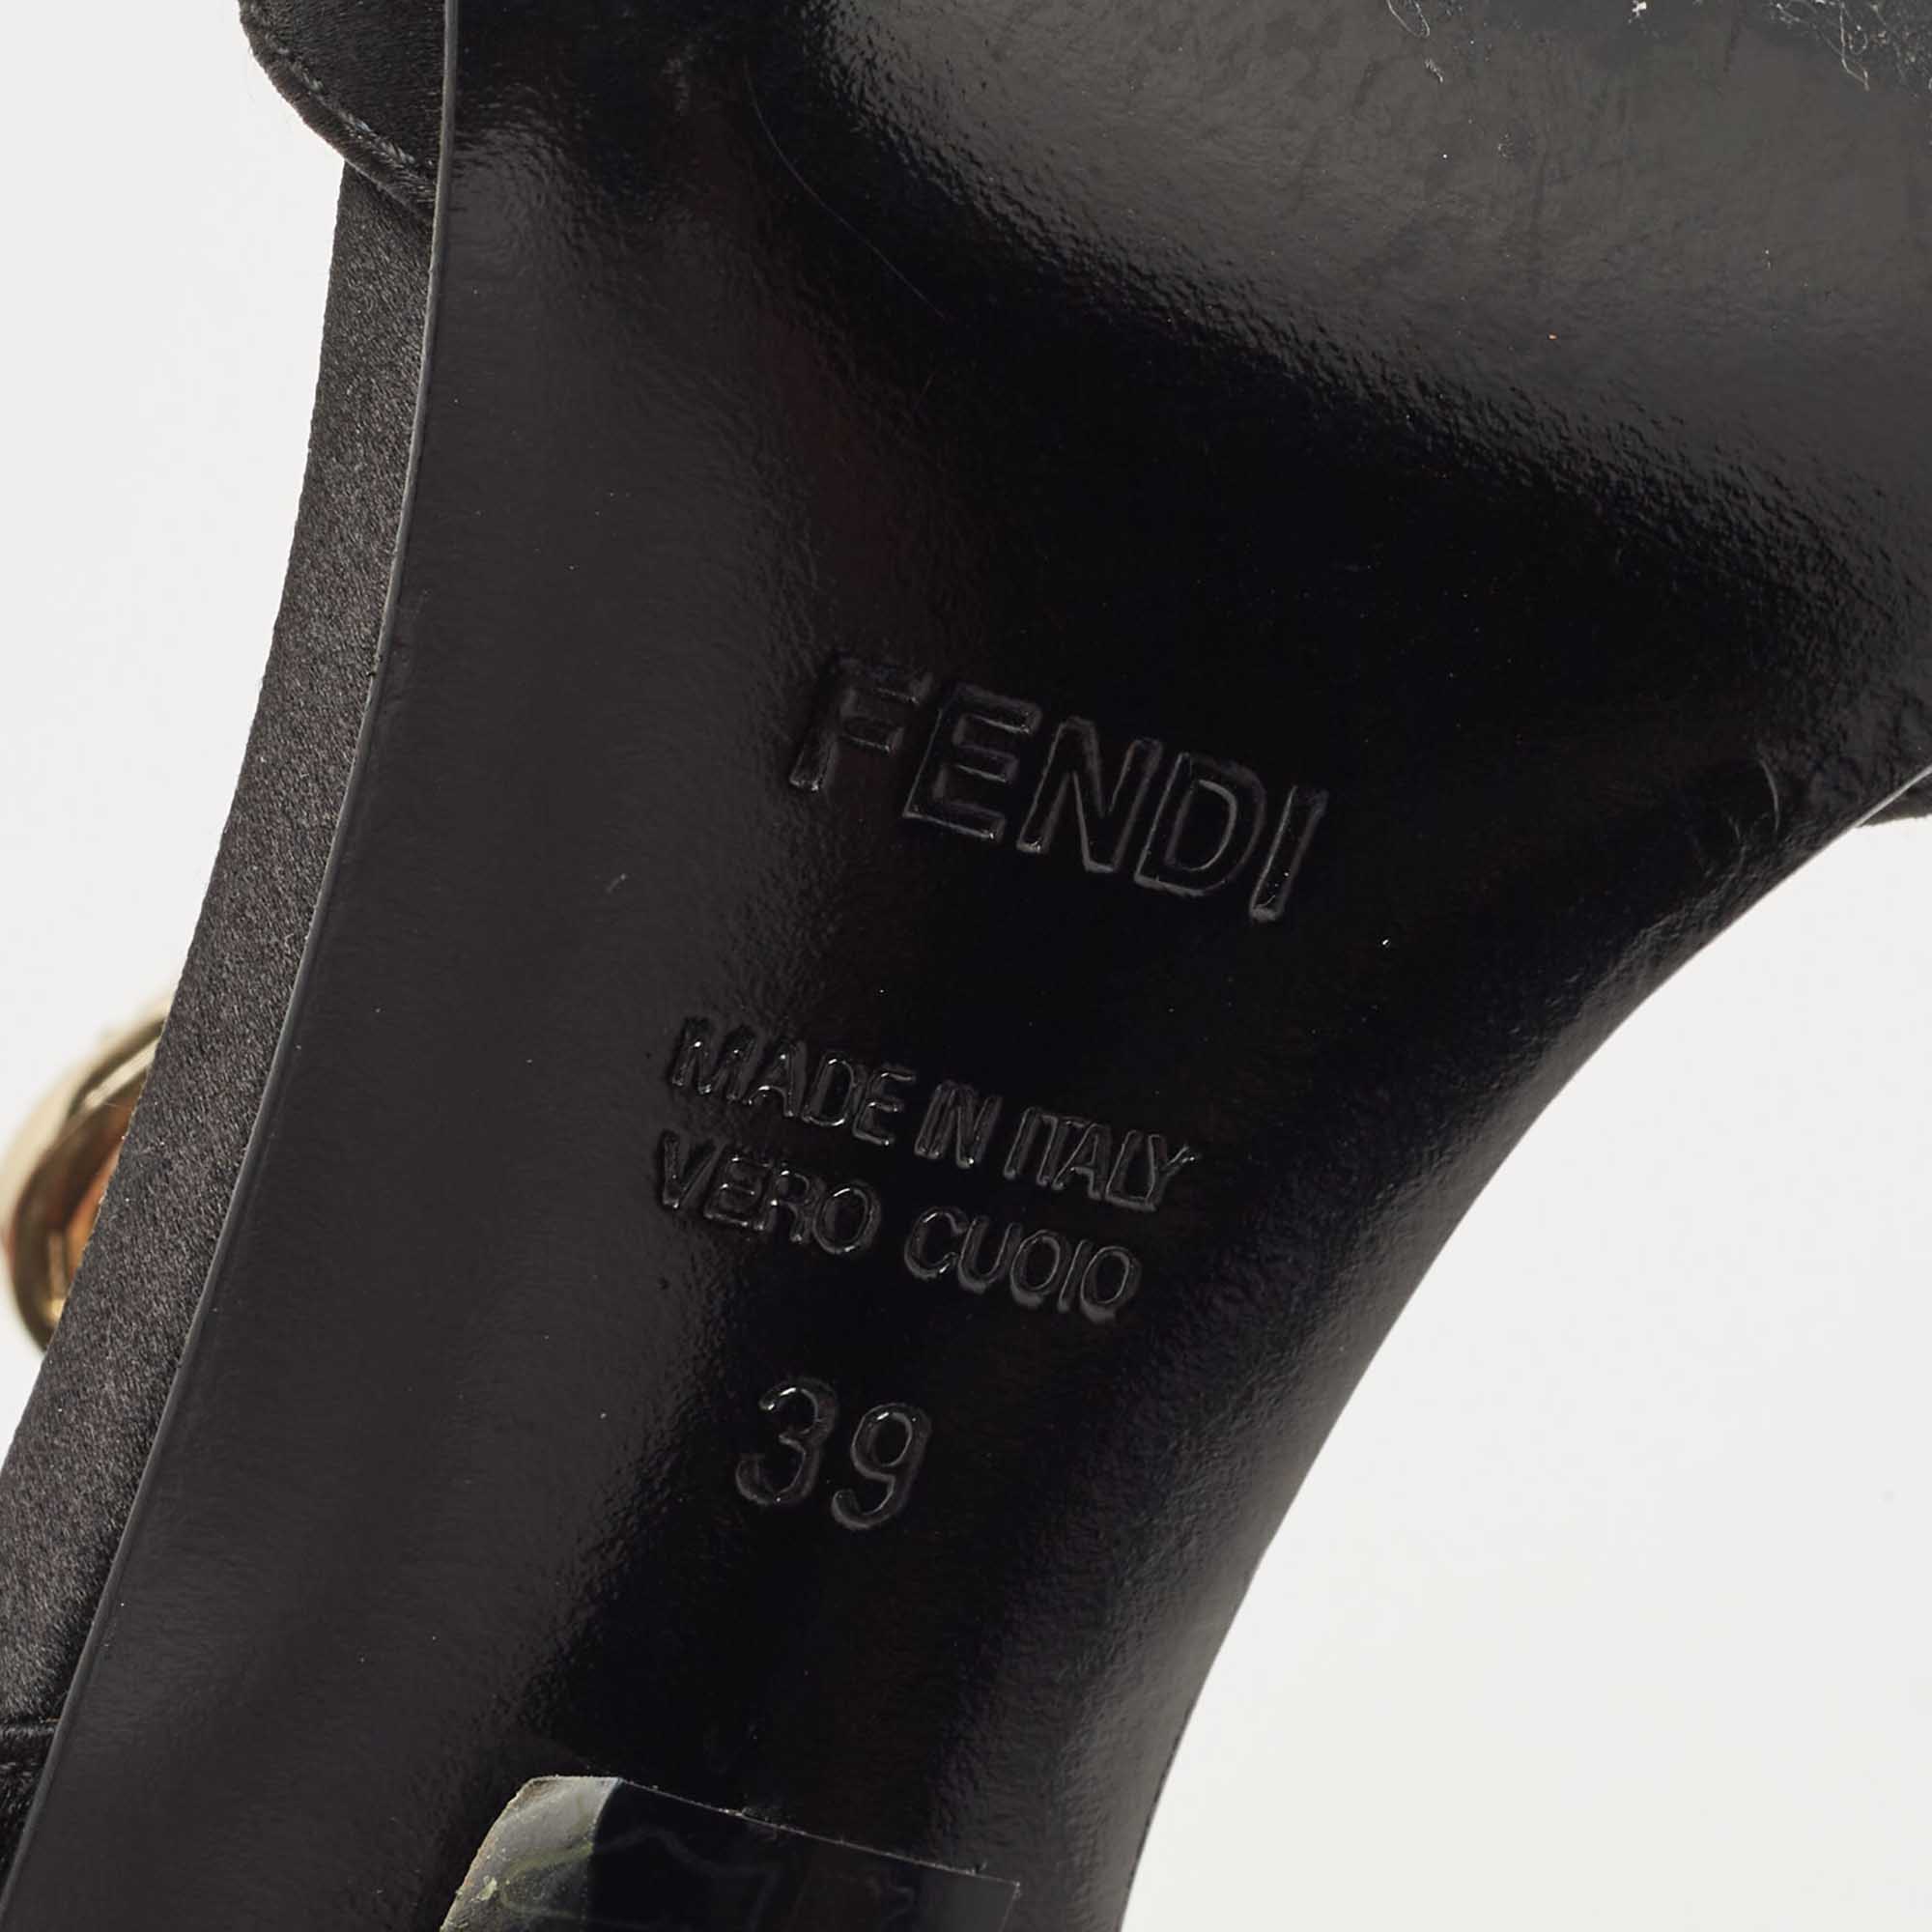 Fendi Black Satin Crystal Embellished Buckle T-Strap Sandals Size 39